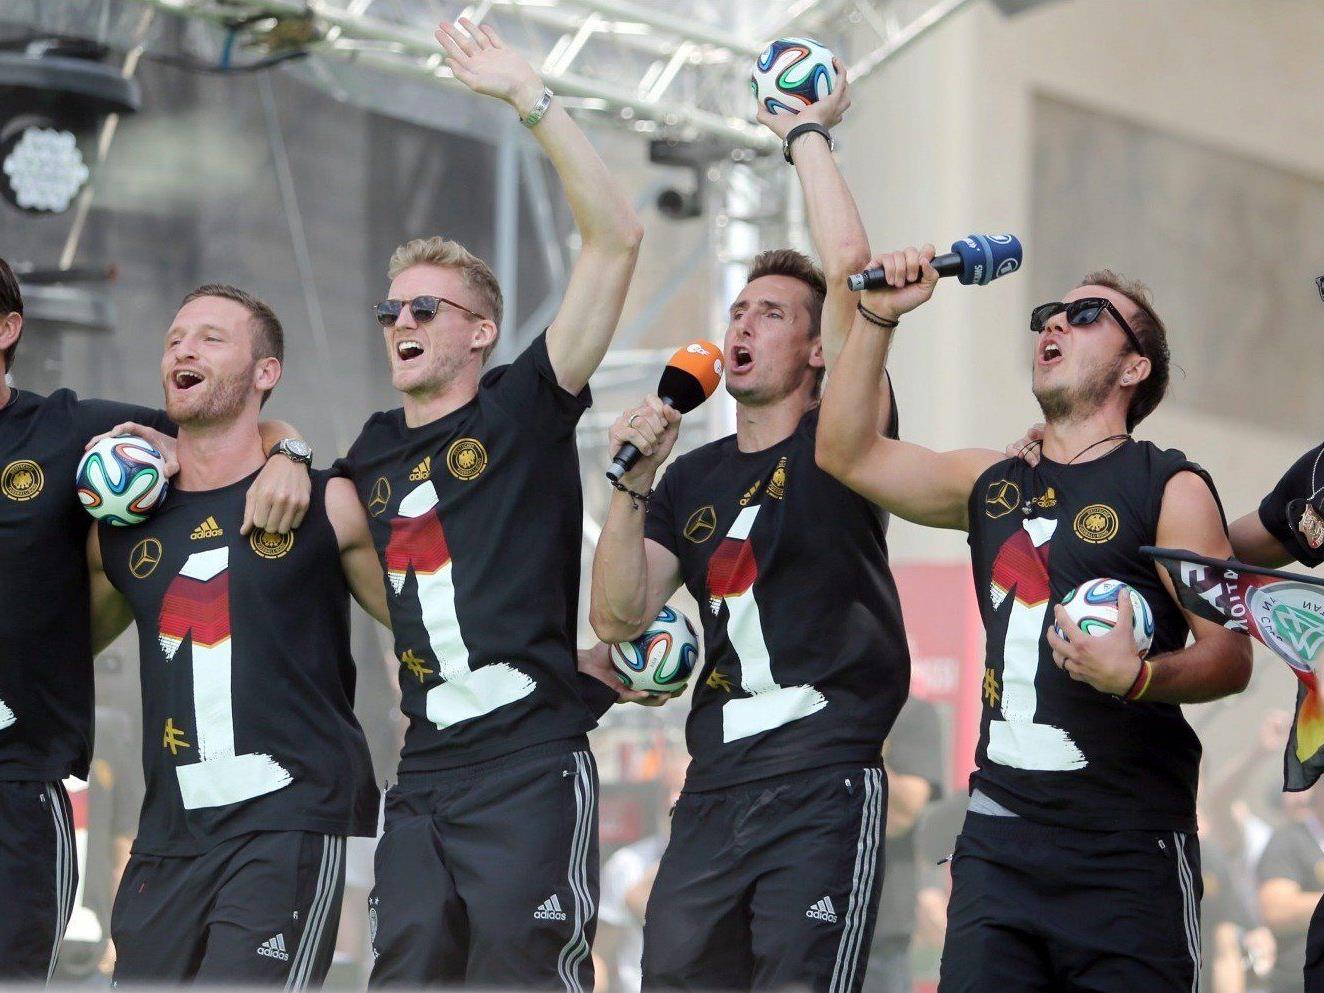 Öffentliche Empörung über "Gaucho-Tanz" von DFB-Spielern nach WM-Sieg.